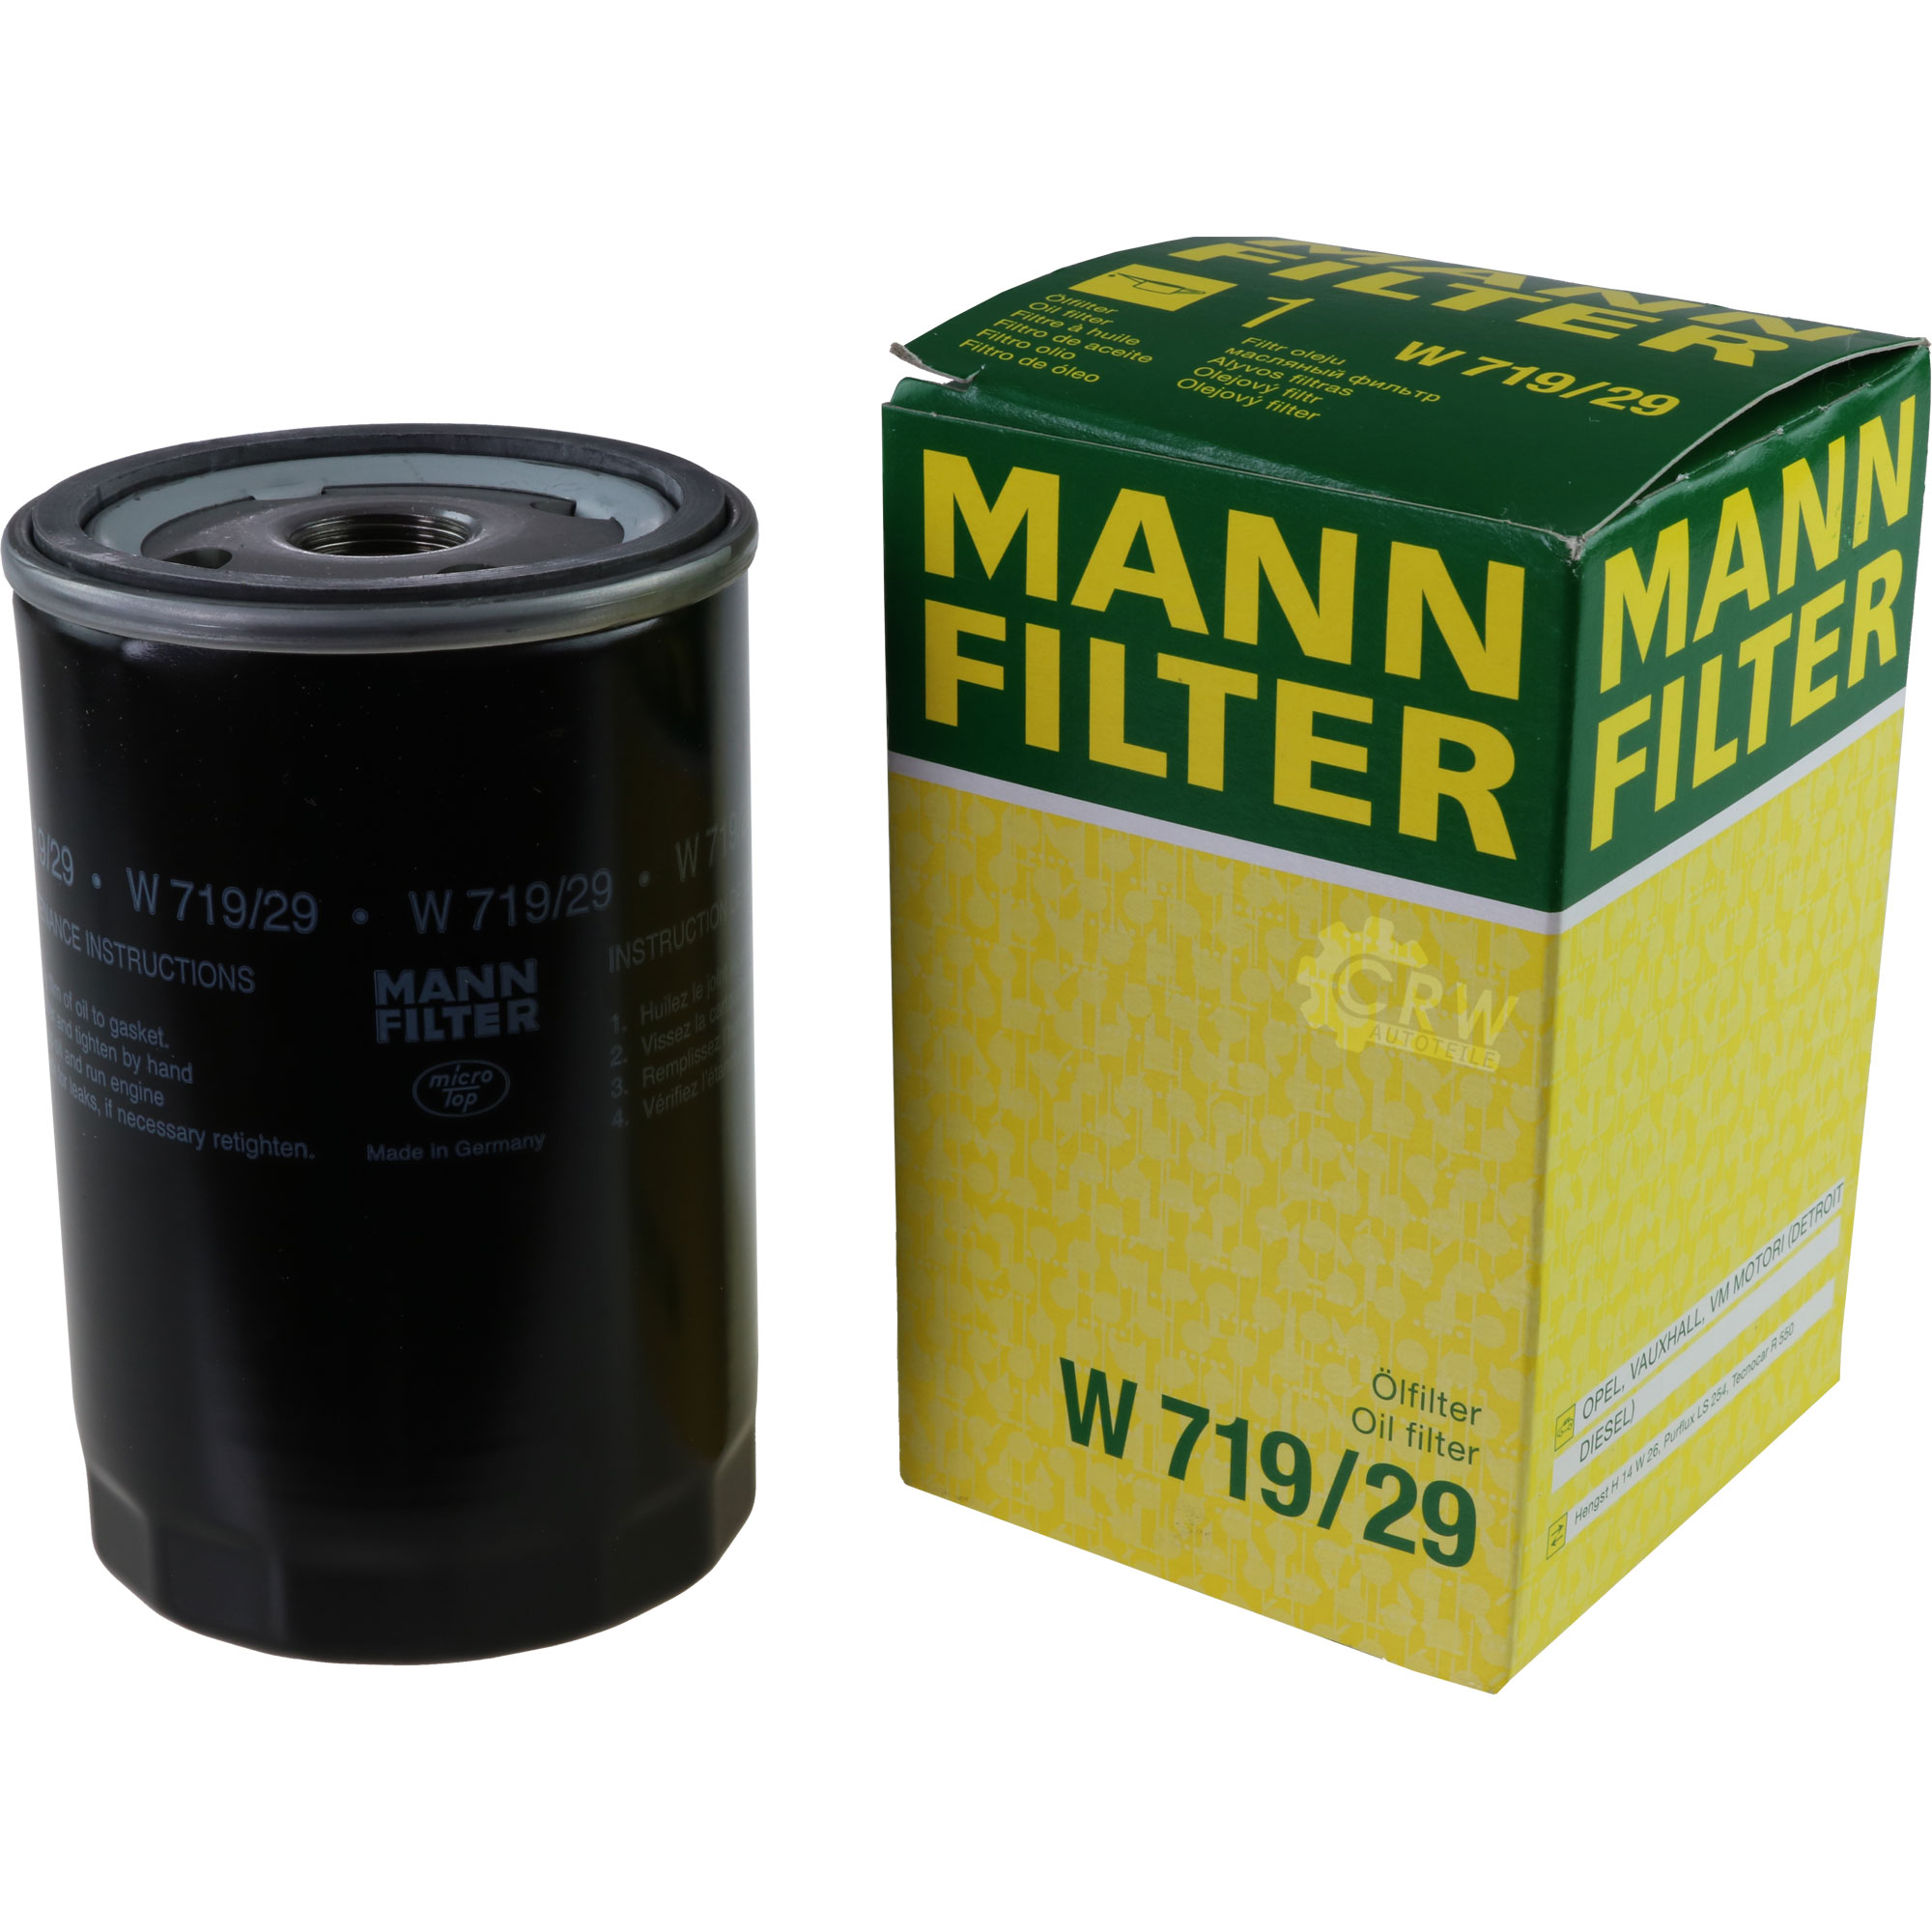 MANN-FILTER Ölfilter W 719/29 Oil Filter